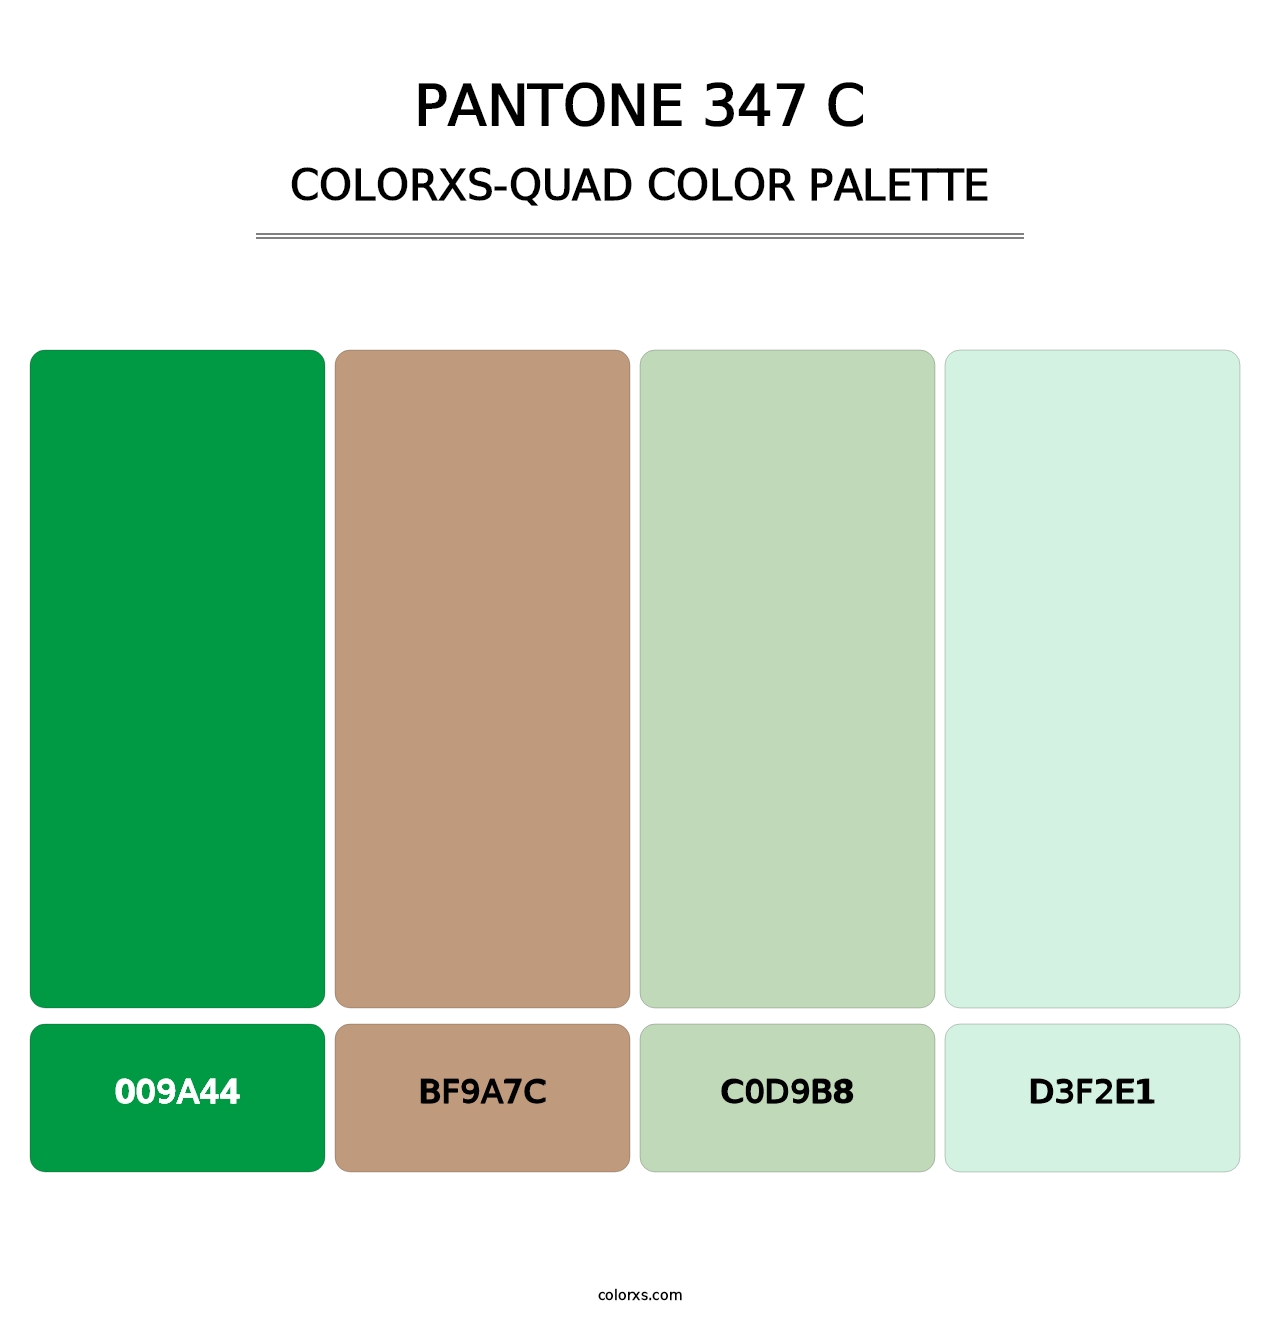 PANTONE 347 C - Colorxs Quad Palette